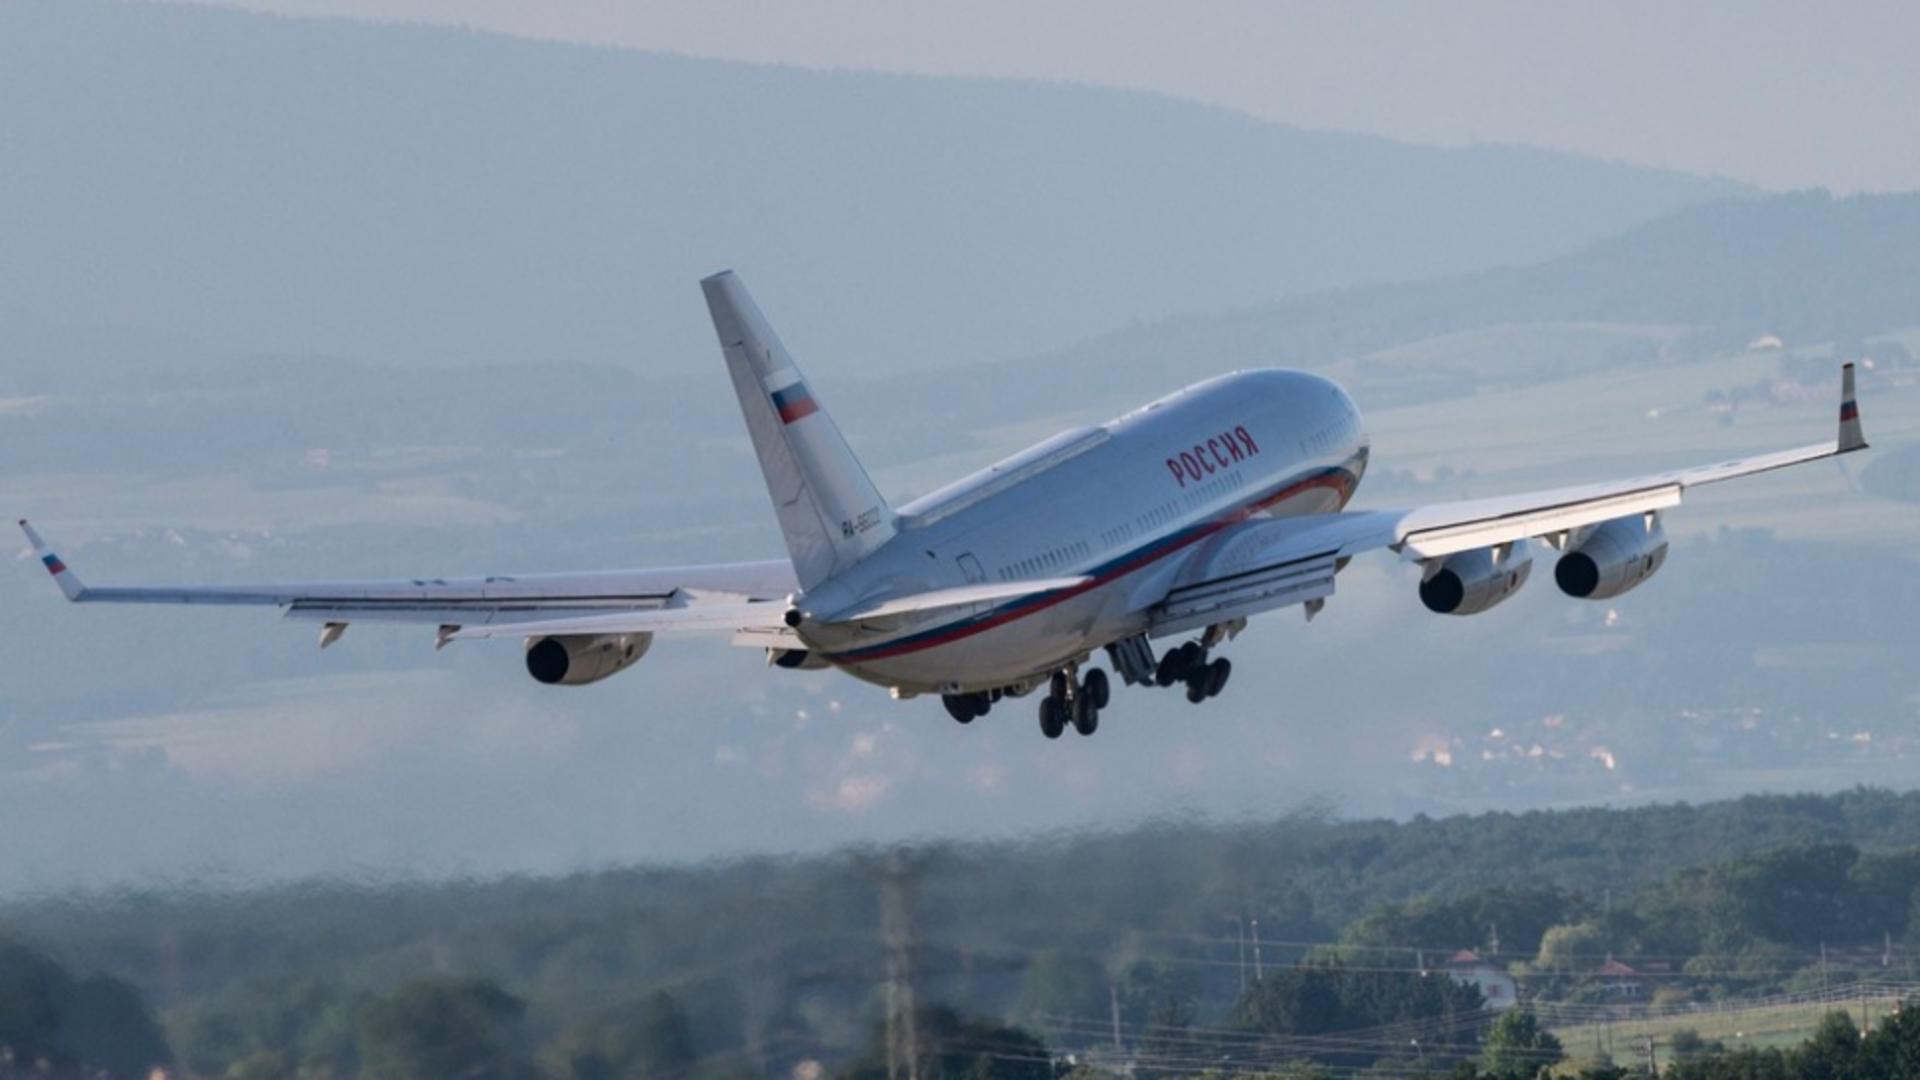 Putin ar fi fugit din Rusia. Avionul prezidențial ar fi încercat să intre în spațiul aerian al Kazahstanului